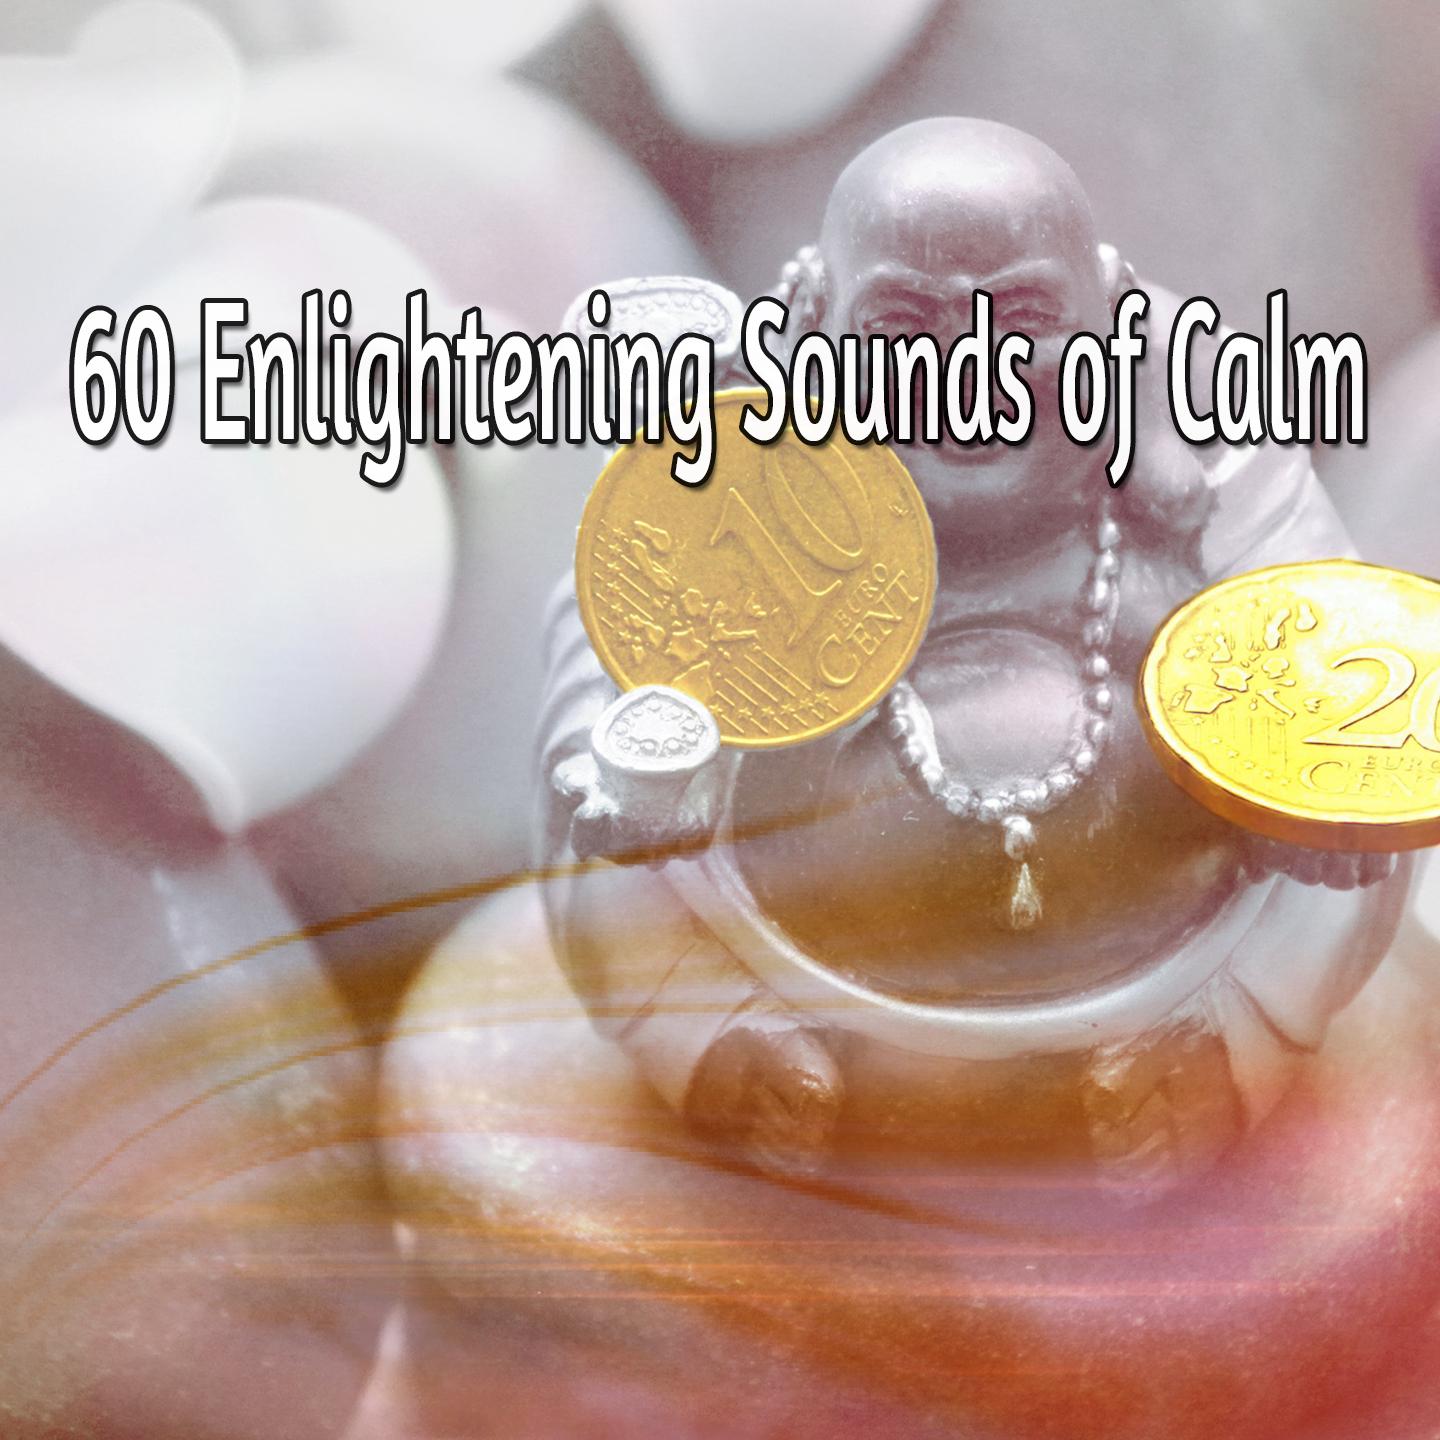 60 Enlightening Sounds of Calm